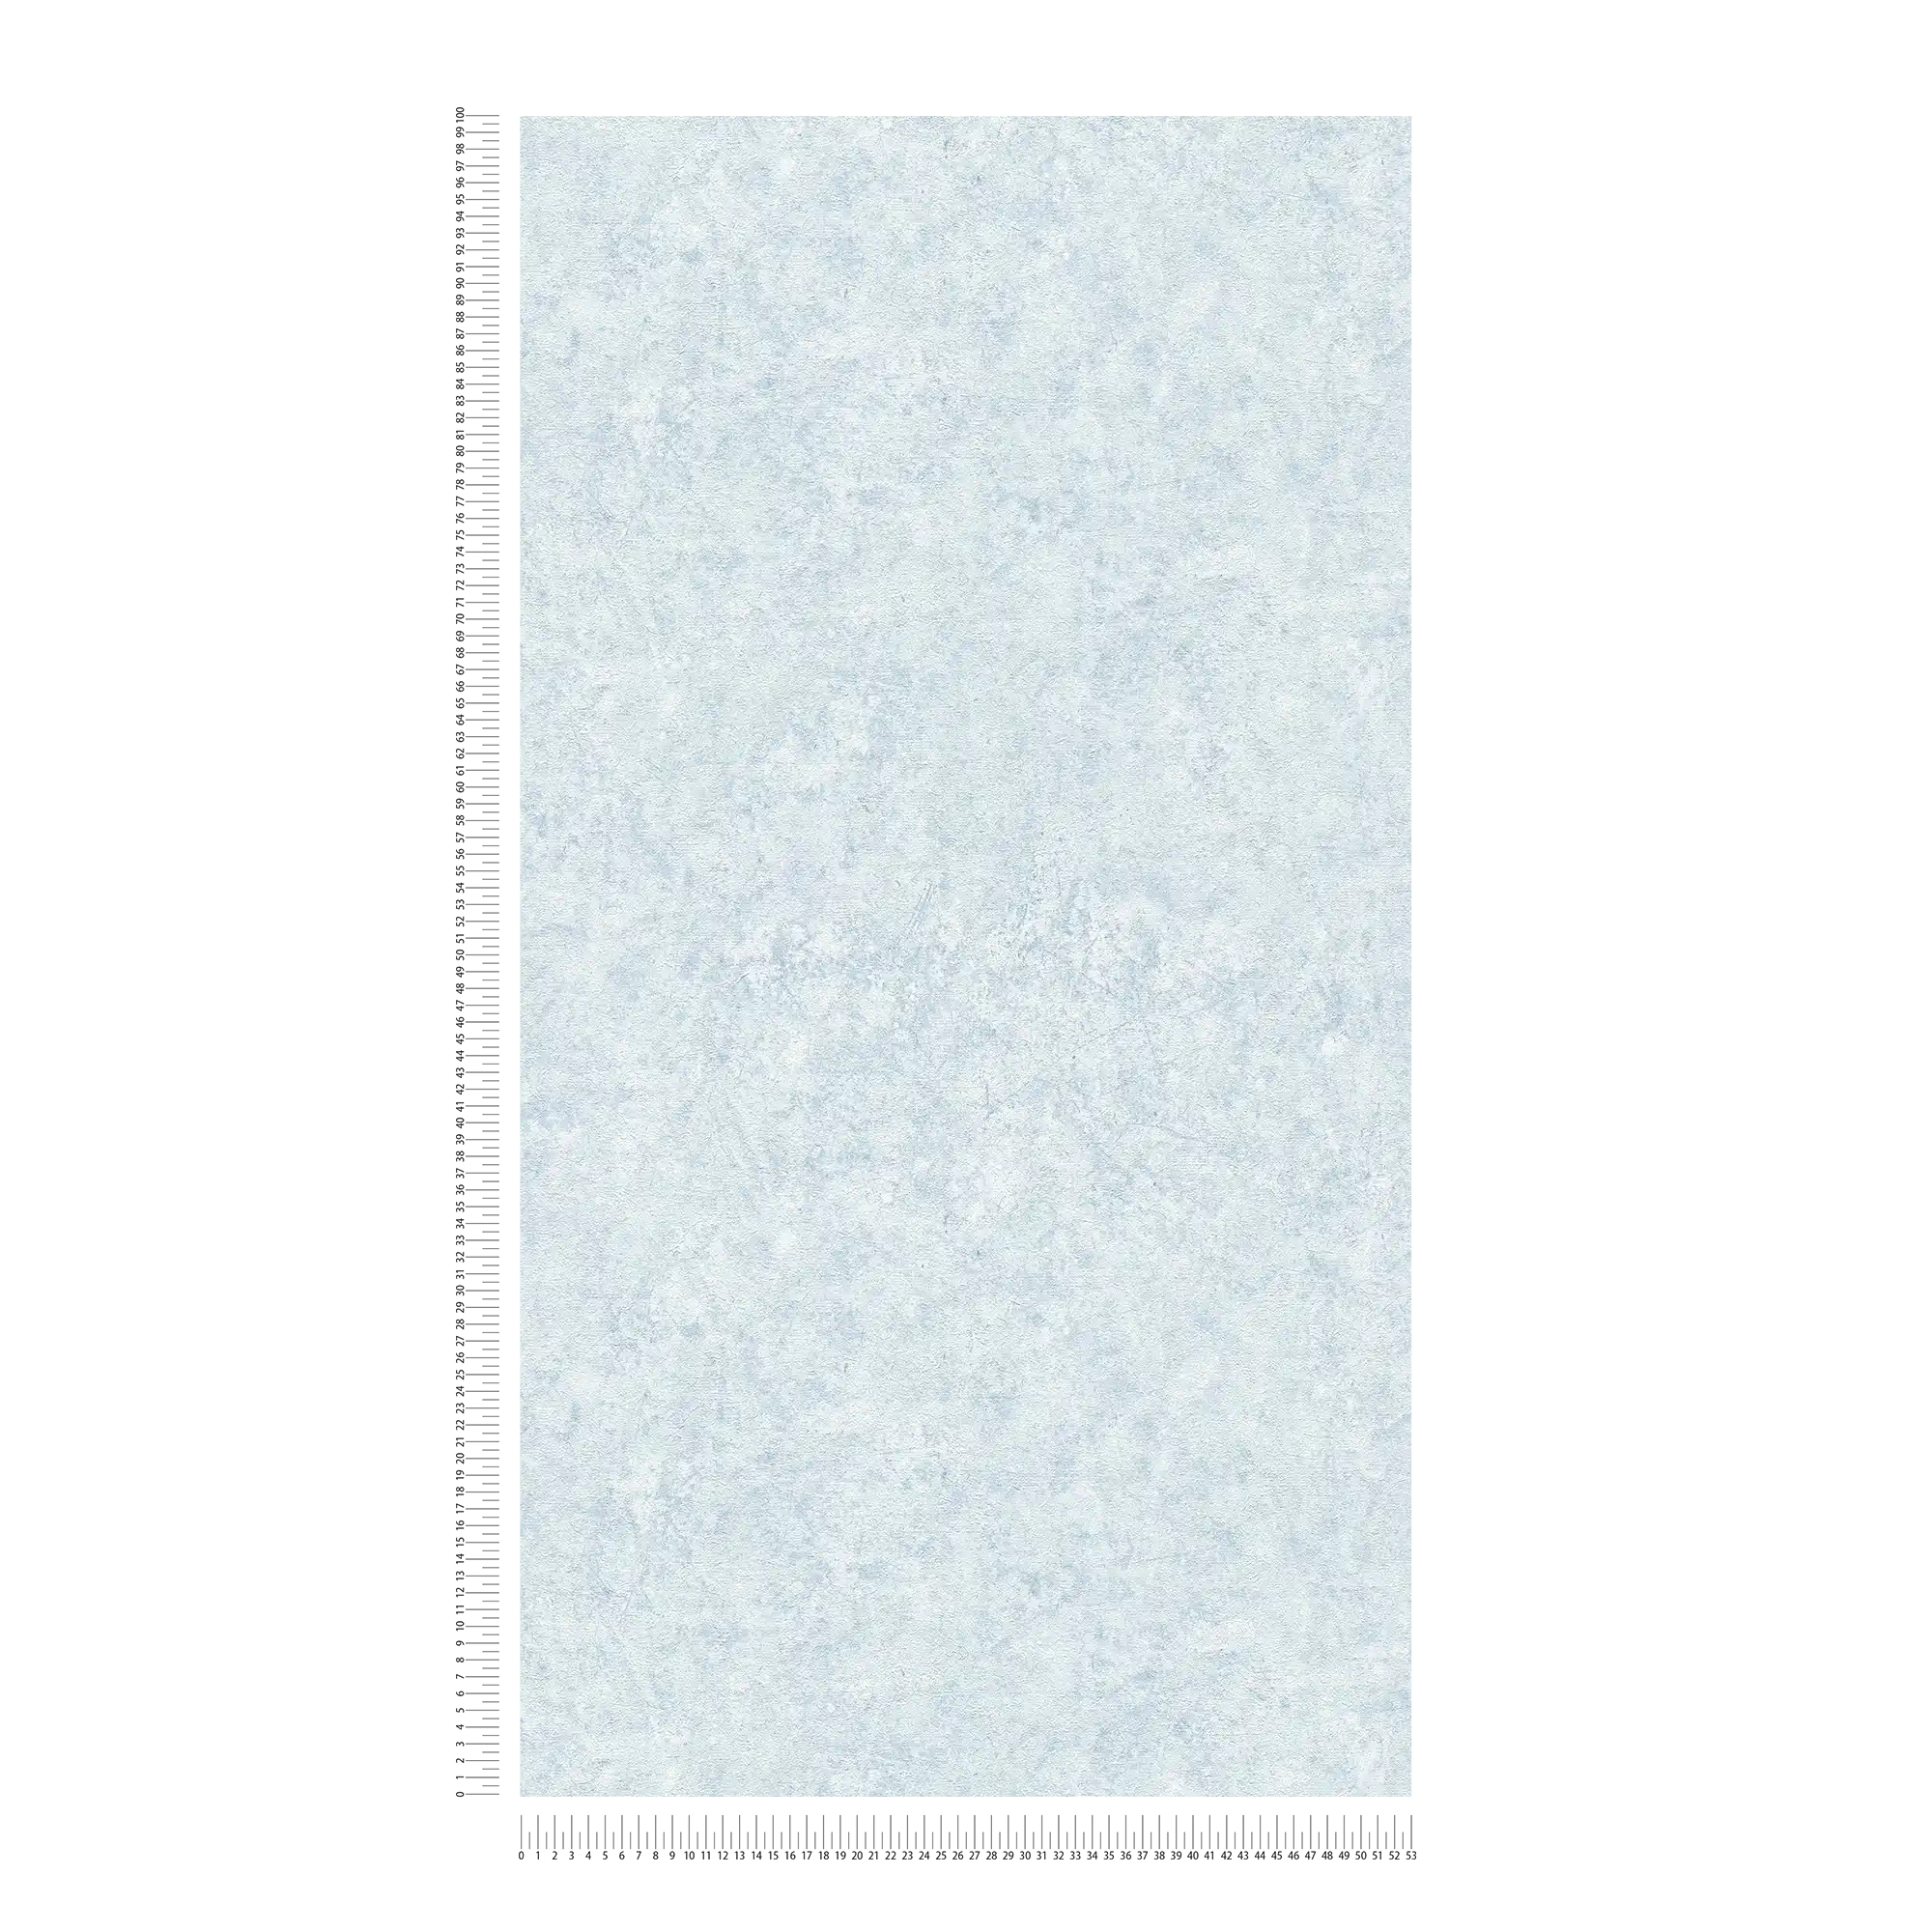             Papier peint uni texturé couleur discrète - bleu, blanc
        